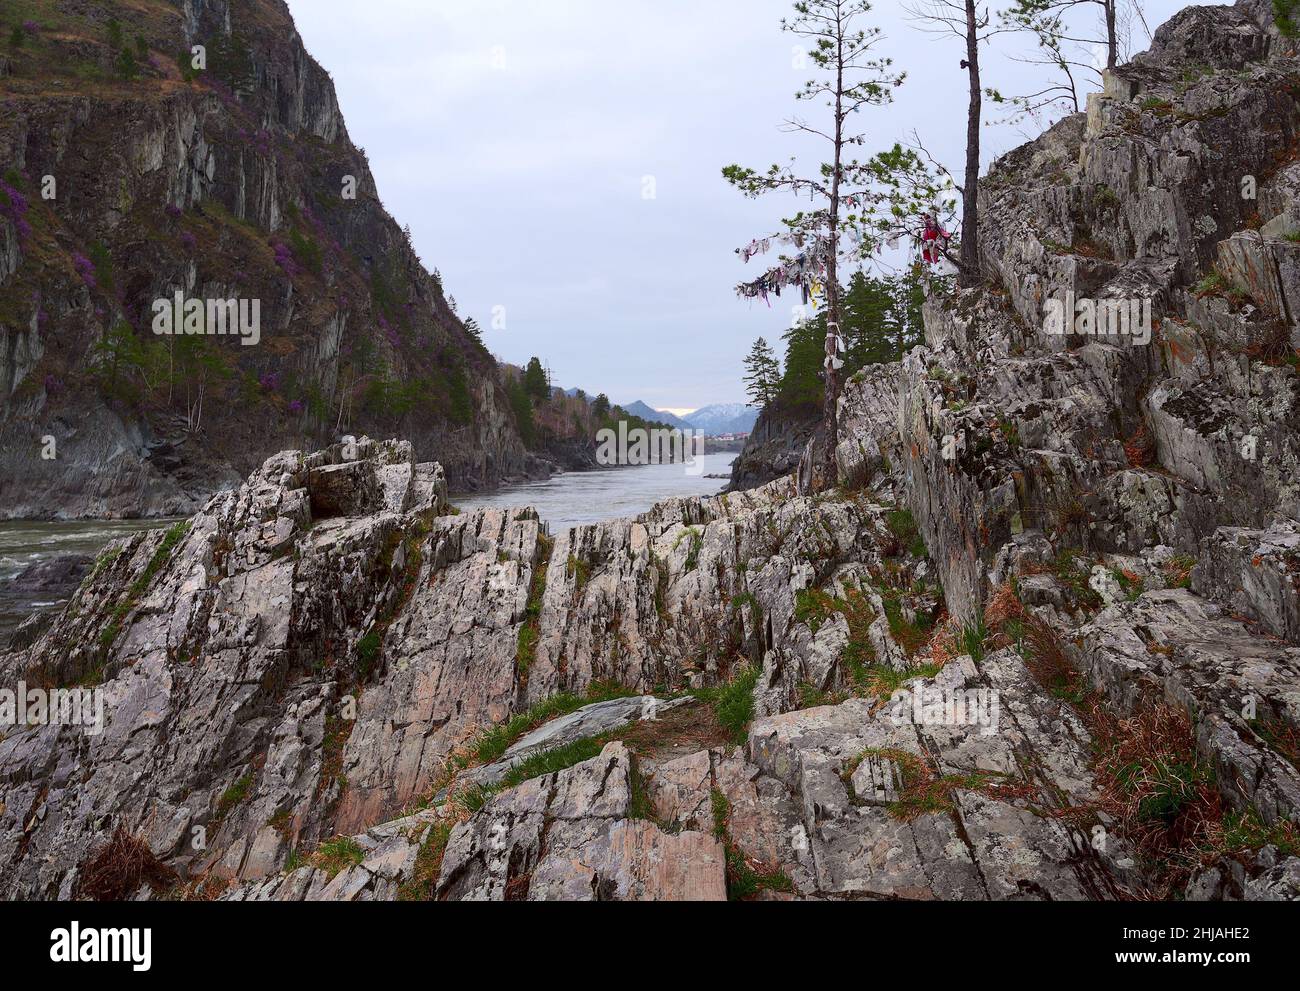 Rocce a strati verticali divergono fan sulle rive di un fiume di montagna. Una montagna ripida, con alberi e erba. Cielo blu. Natura pura del SIB Foto Stock